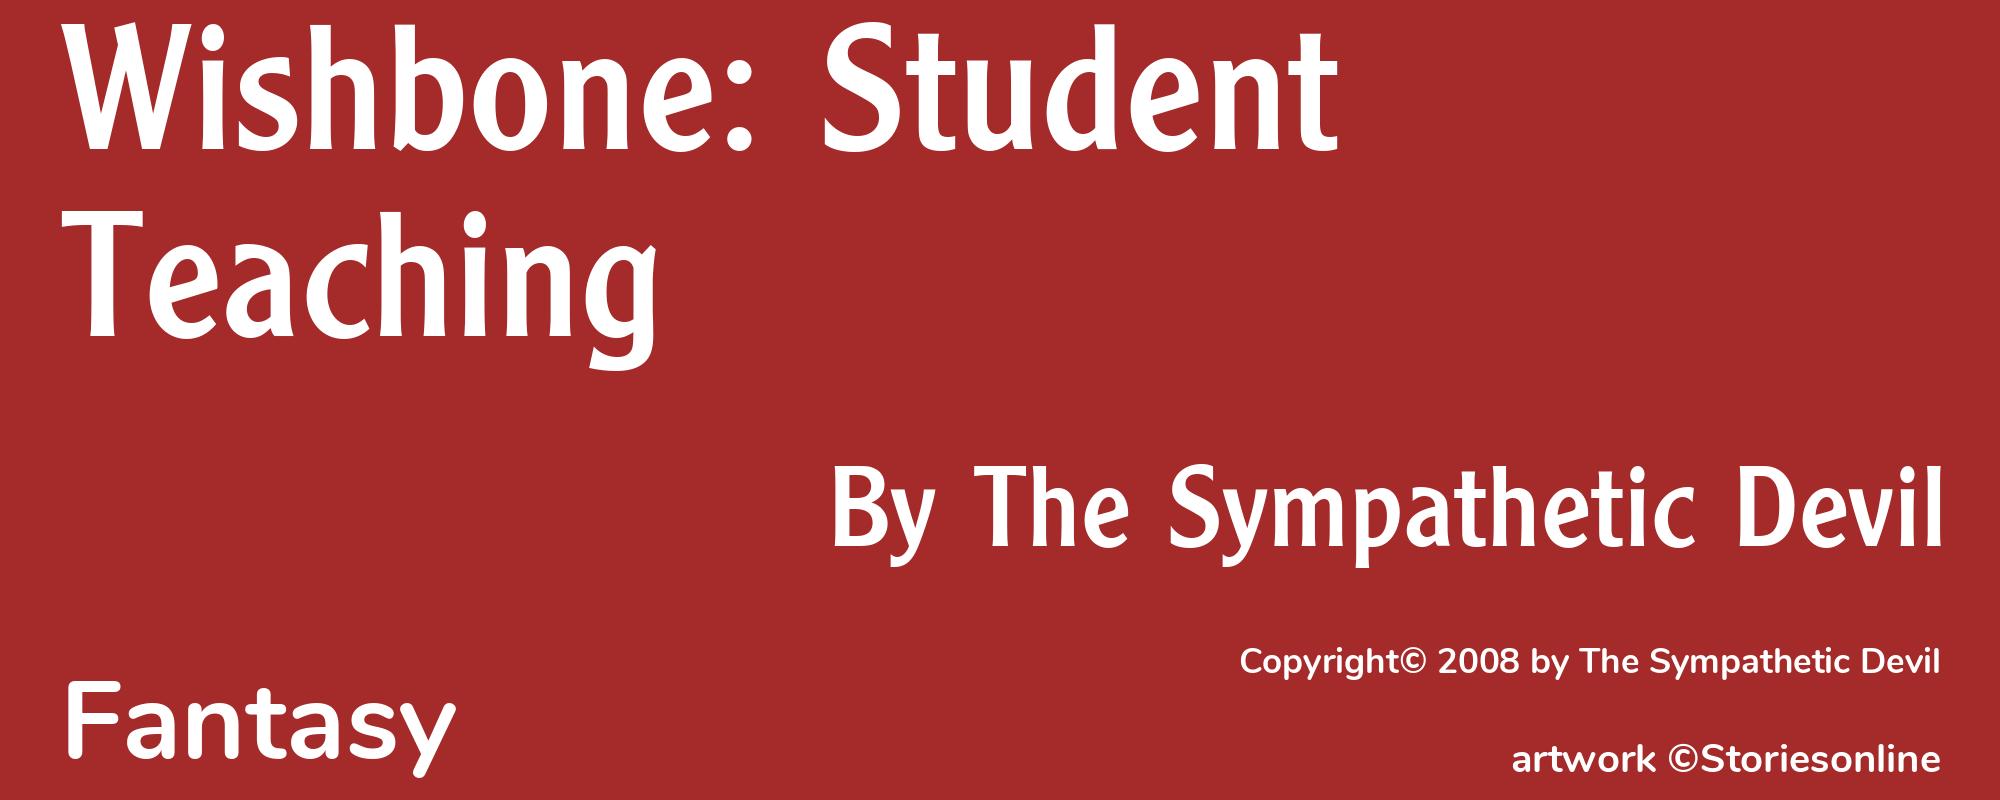 Wishbone: Student Teaching - Cover